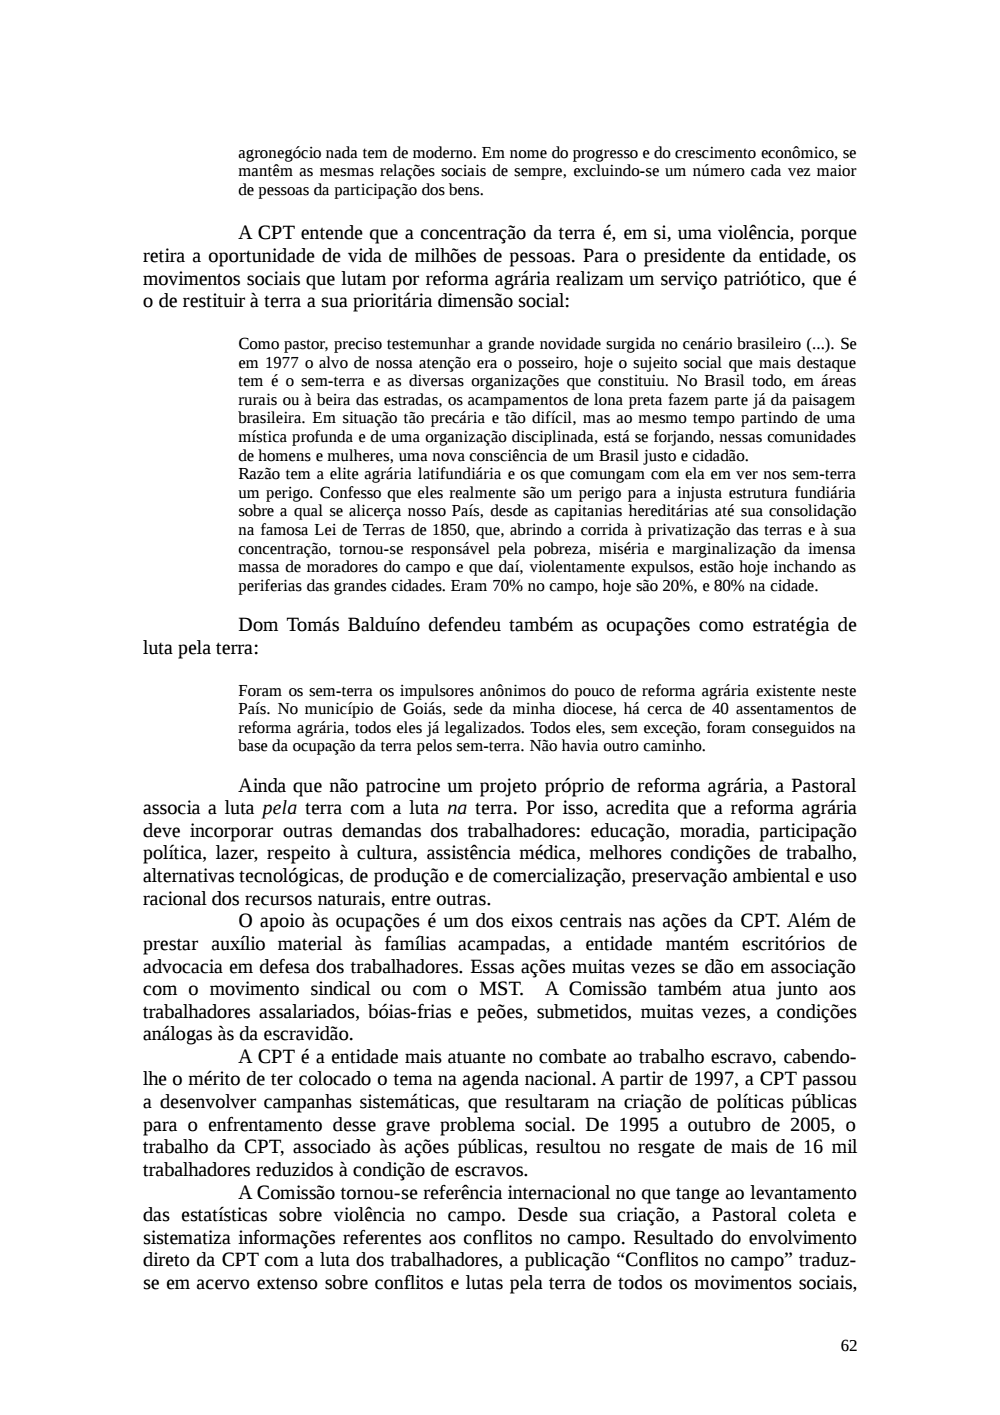 Page 62 from Relatório final da comissão